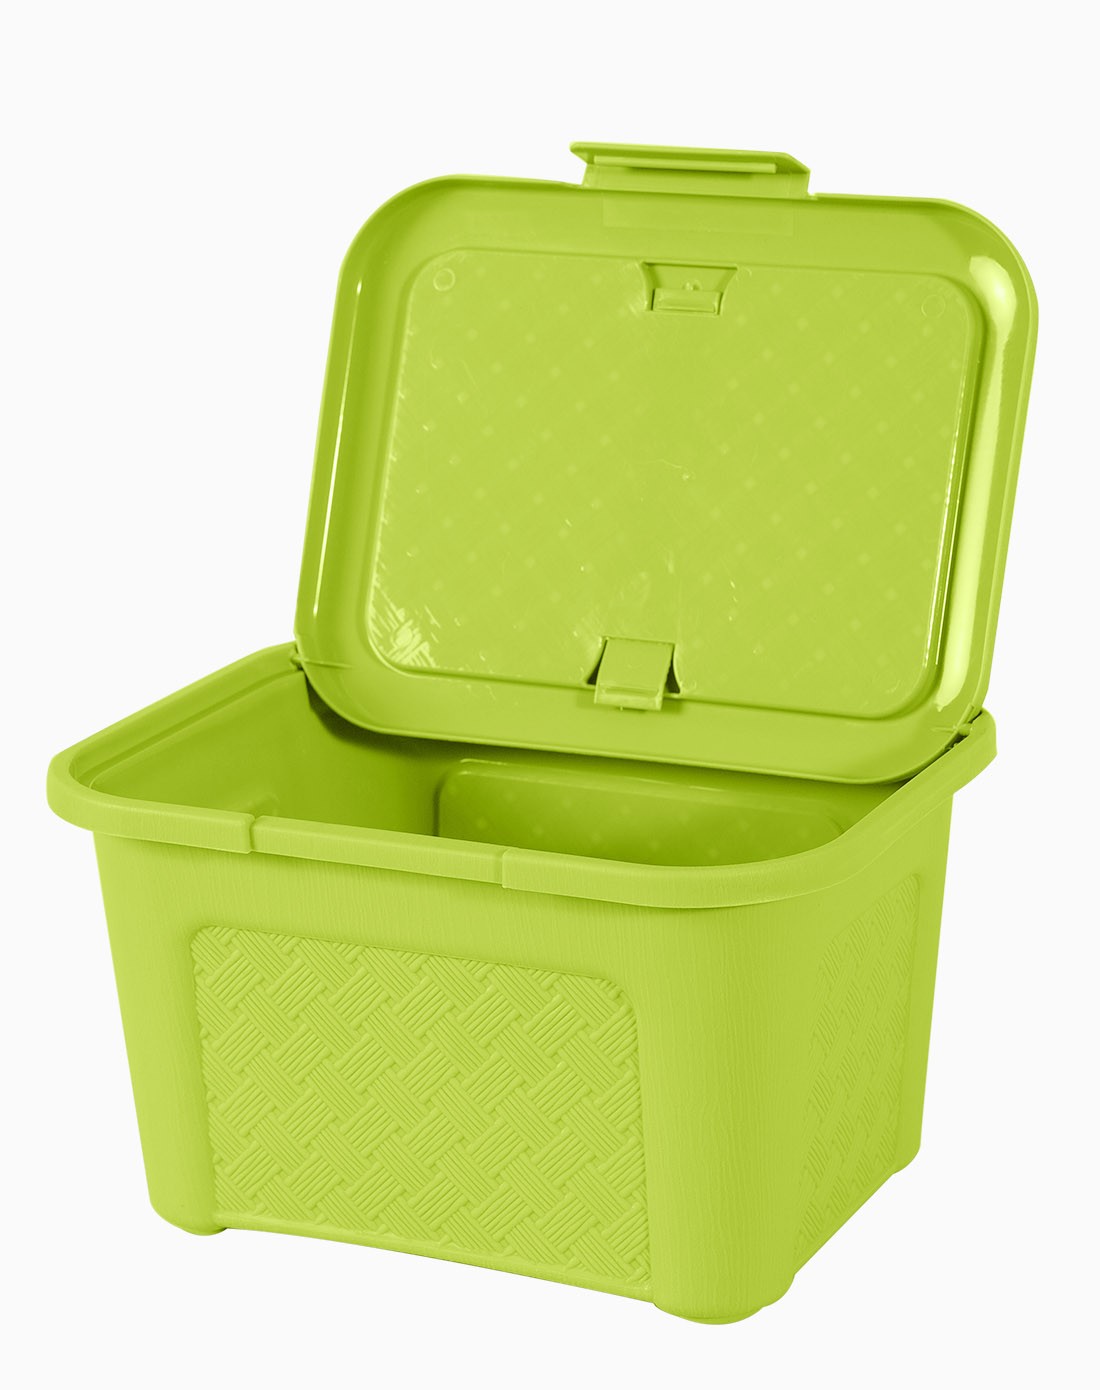 多功能塑料纹理收纳箱(绿色)